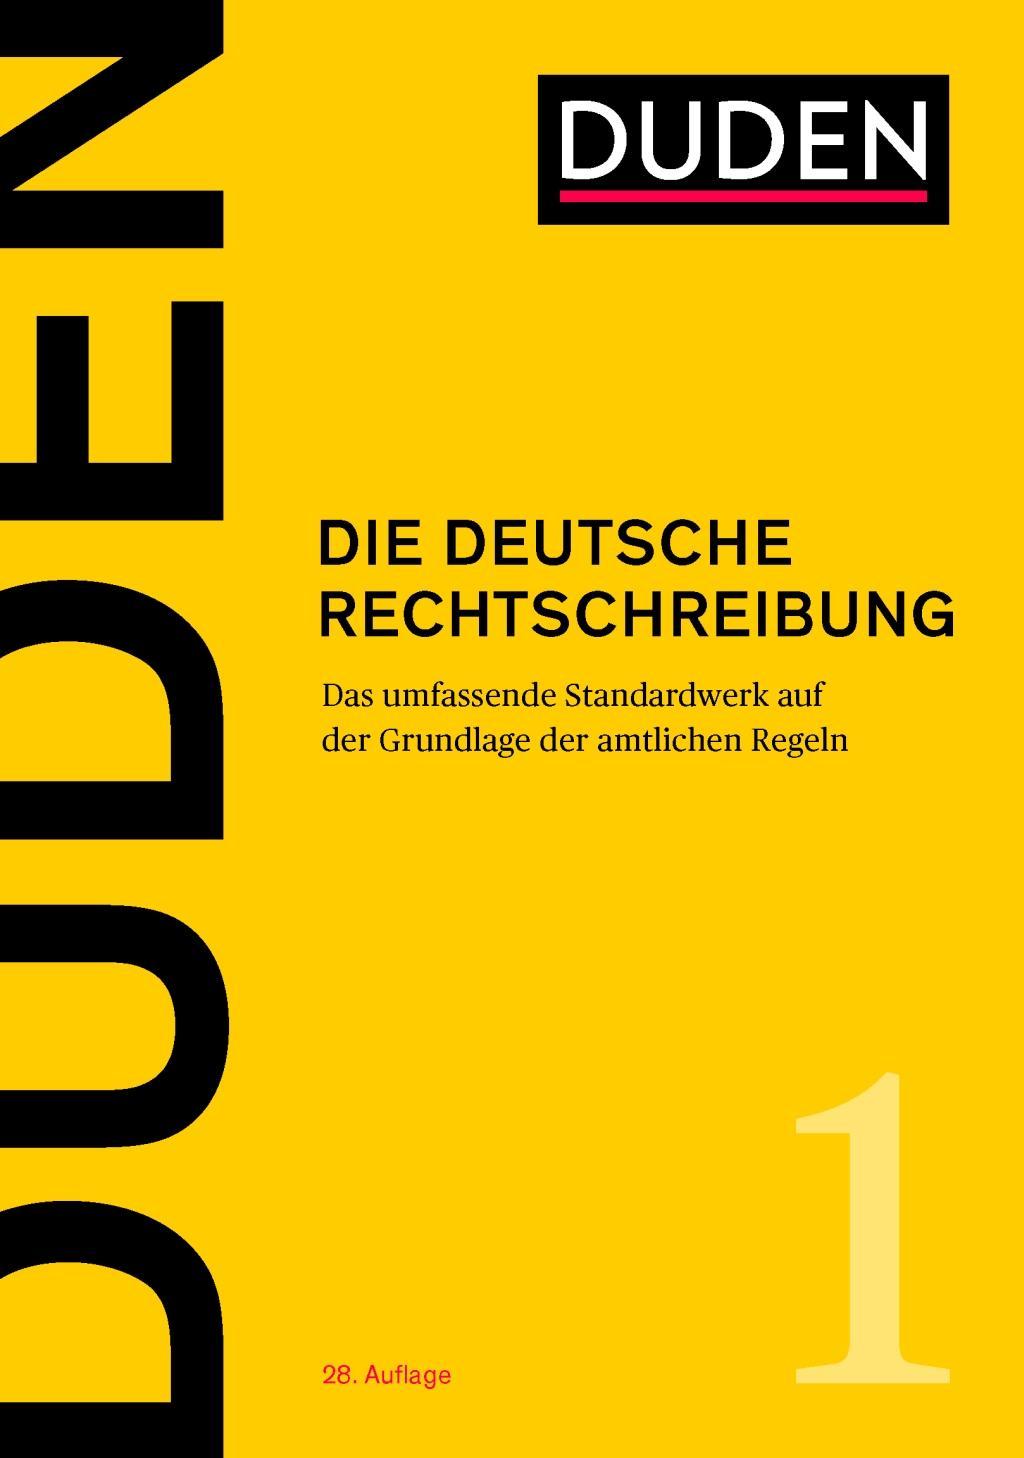 Book Duden - Die deutsche Rechtschreibung 